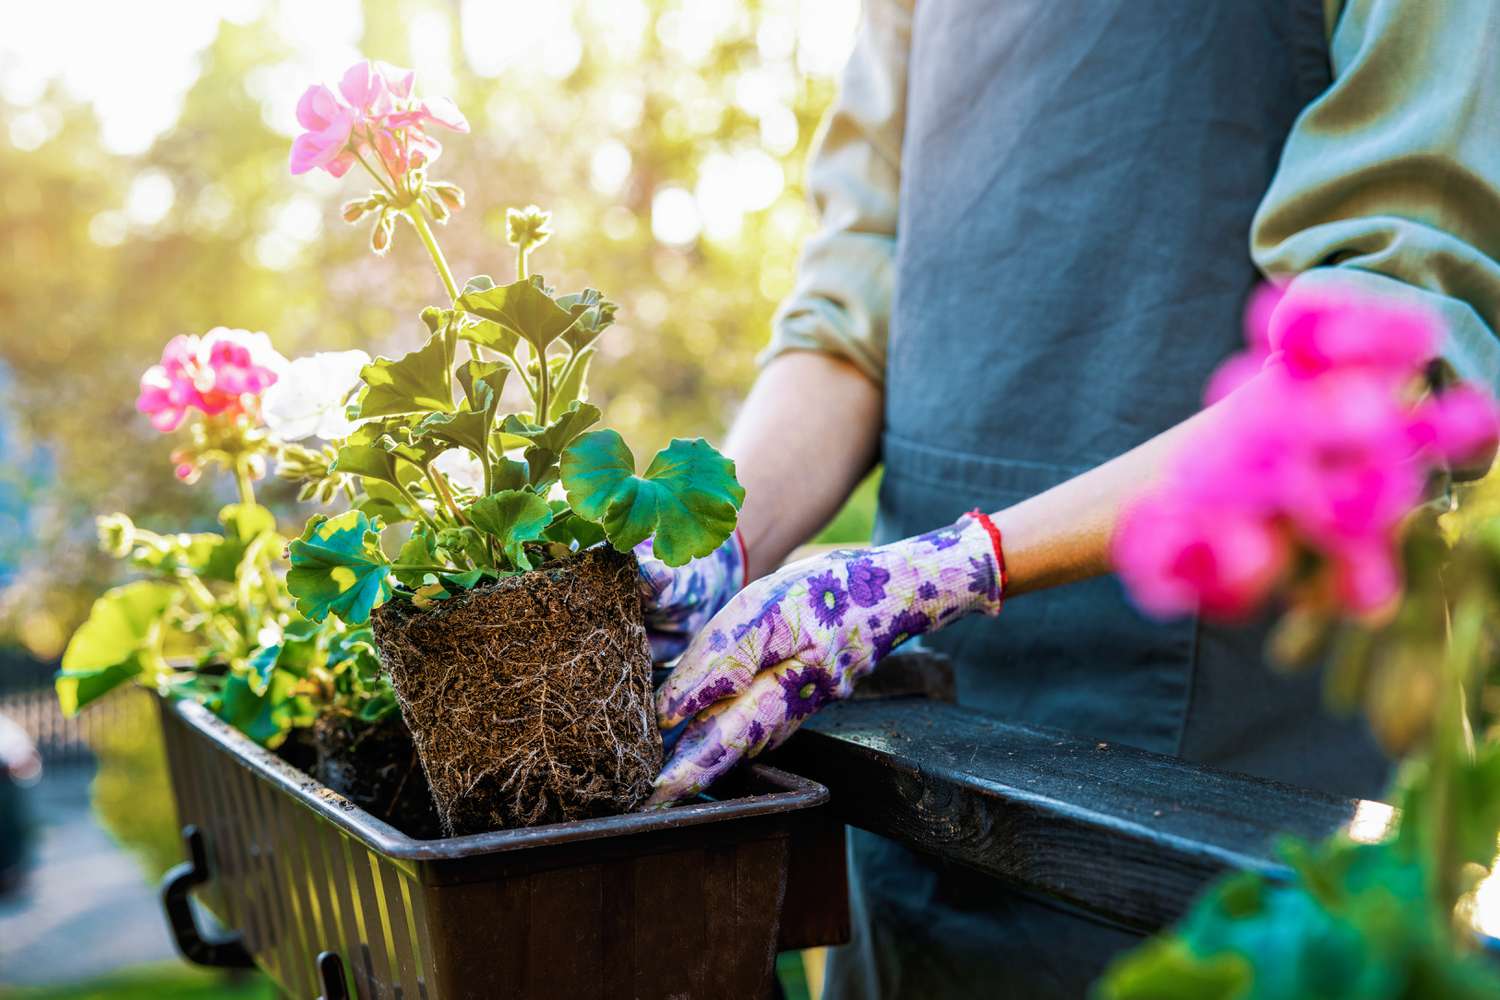 “Indoor Gardening: Bringing Nature Inside with Houseplants and Indoor Gardens”